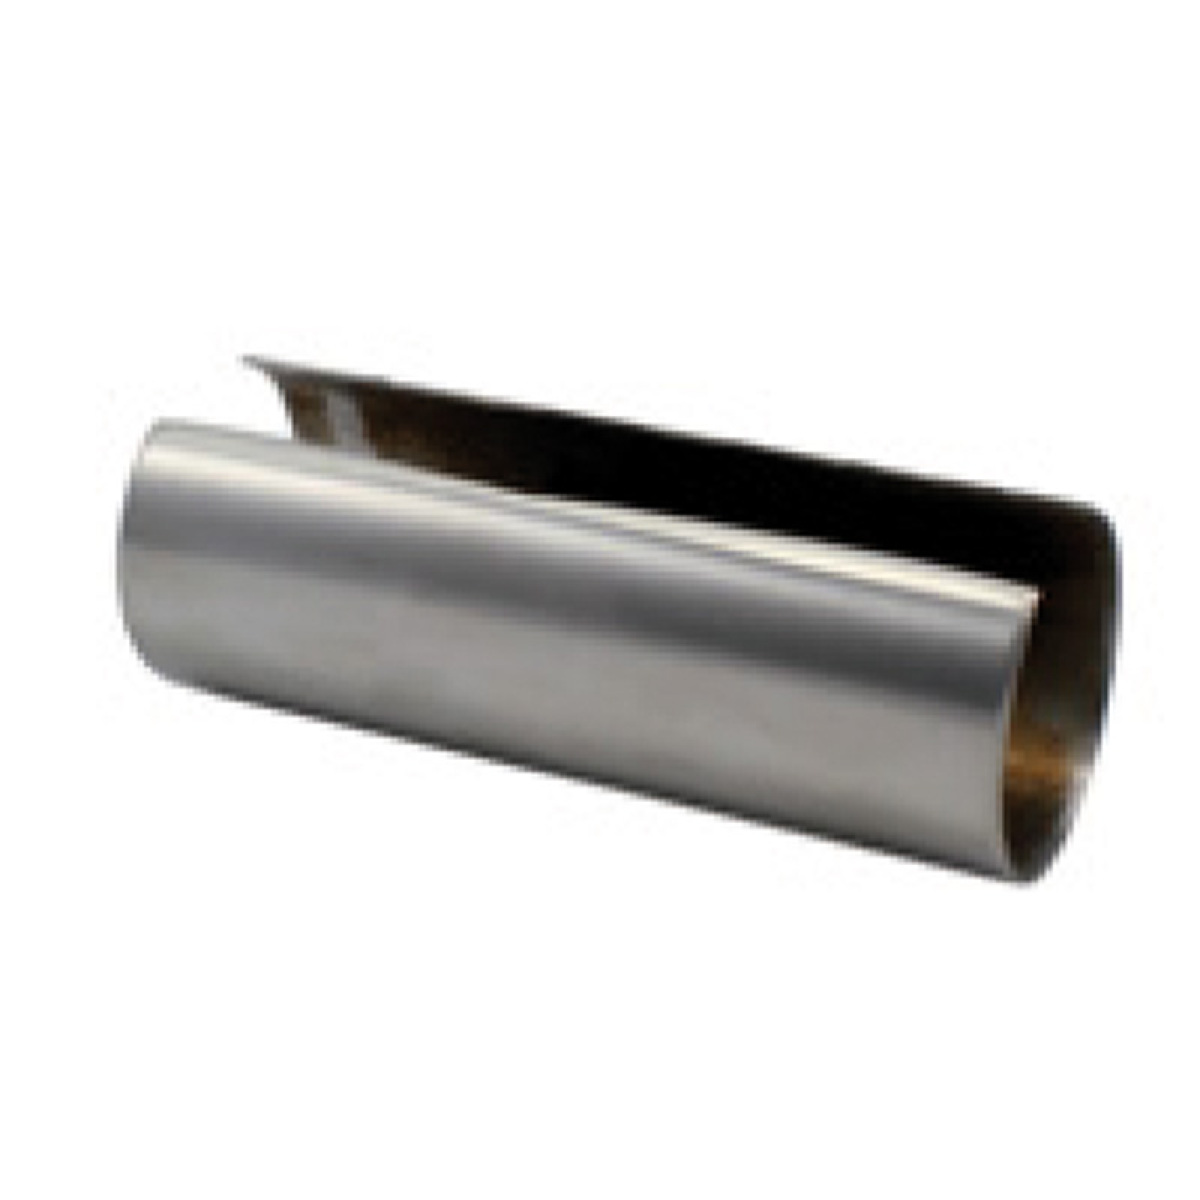 Cuivrinox - Aboutage de tube intérieur - Matériau : Inox poli - Pour tube  de diamètre : 30 mm - CUIVRINOX - Cheville - Rue du Commerce